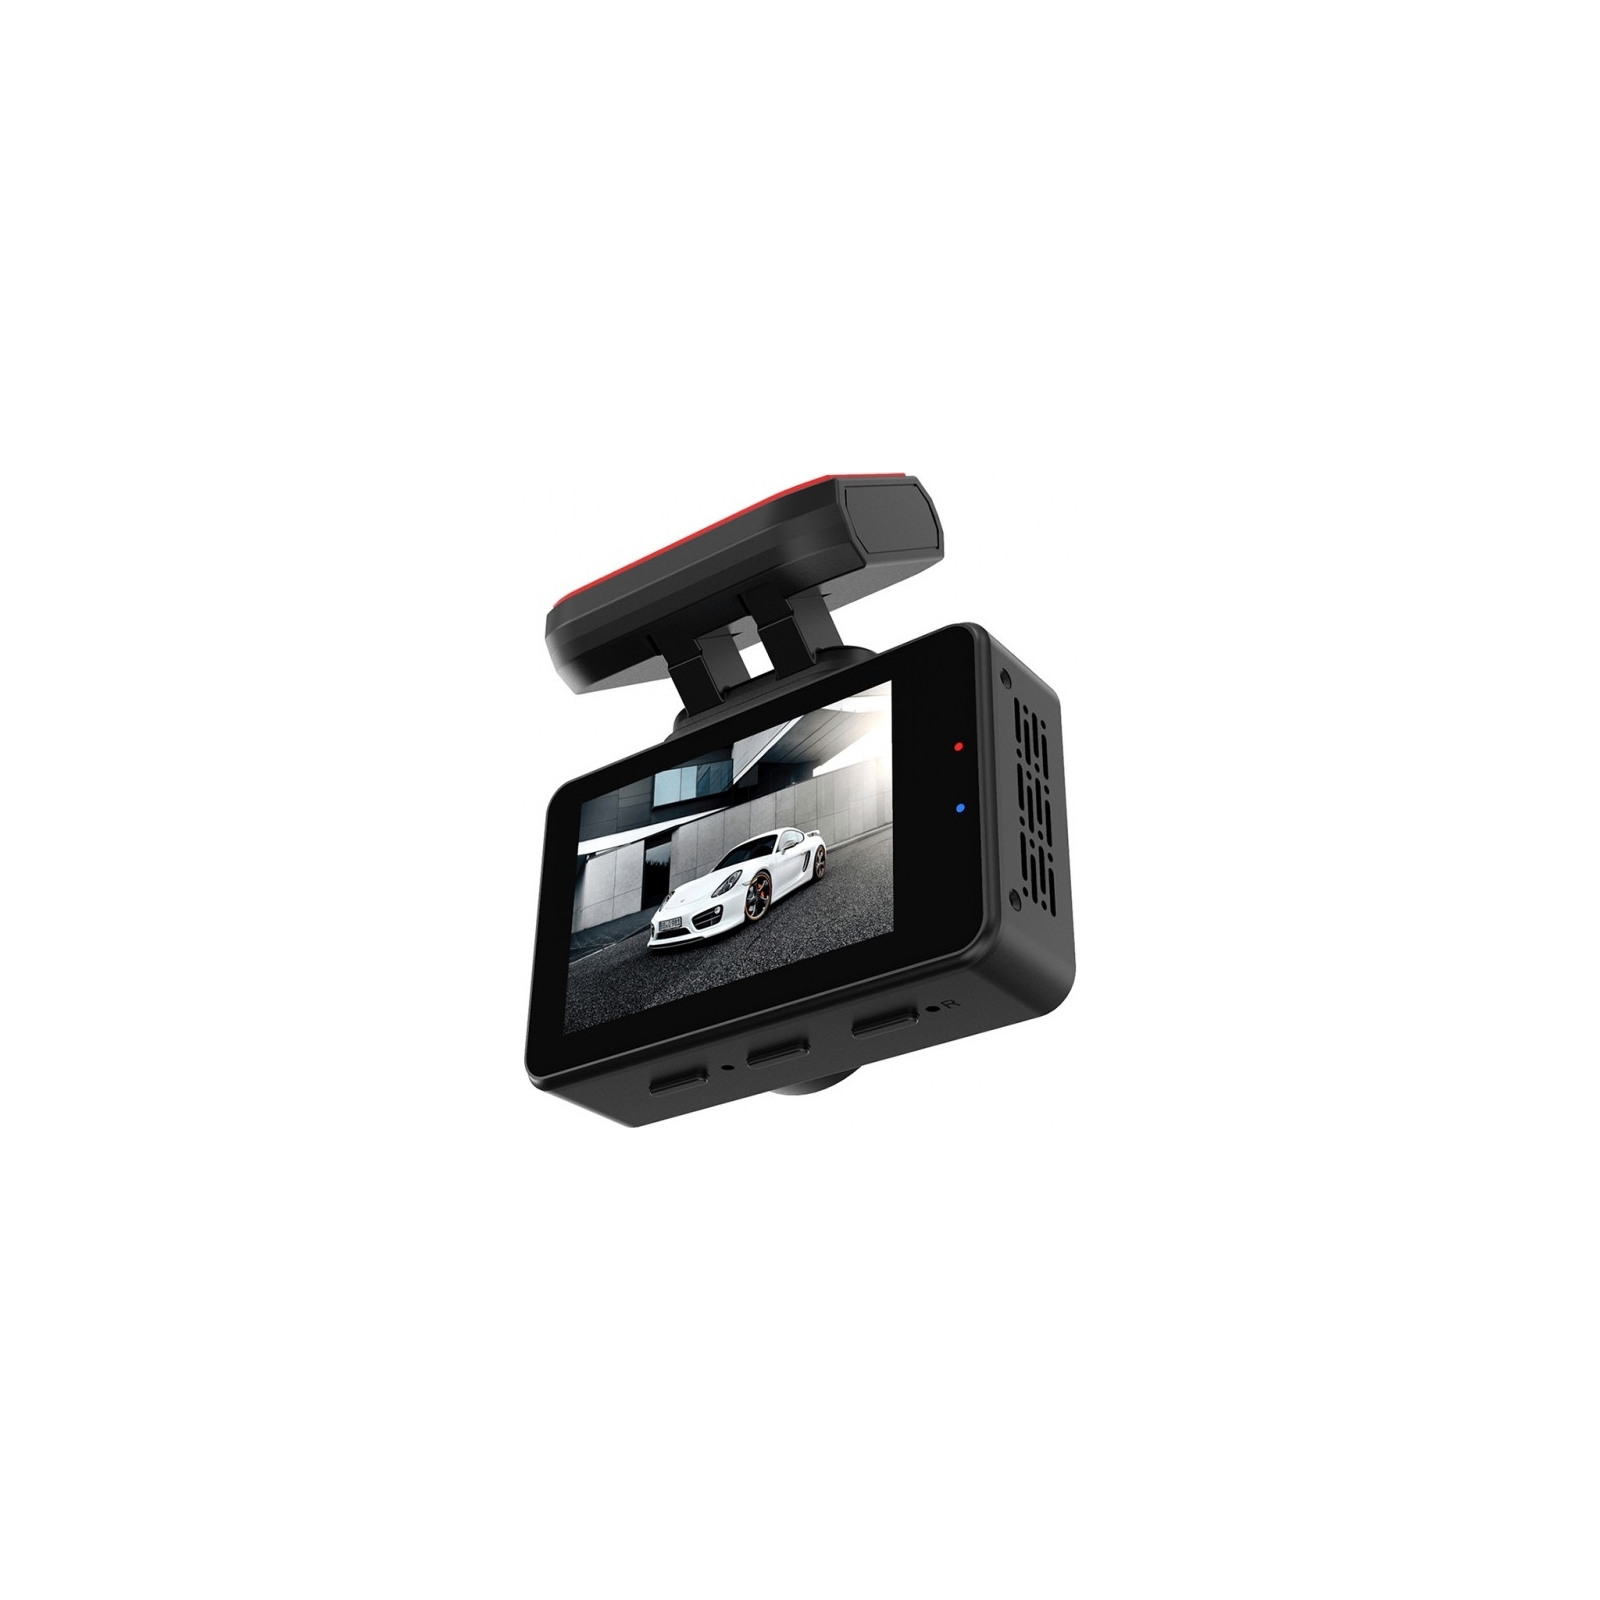 Відеореєстратор Aspiring AT300 Speedcam, GPS, Magnet (Aspiring AT300 Speedcam, GPS, Magnet) зображення 7